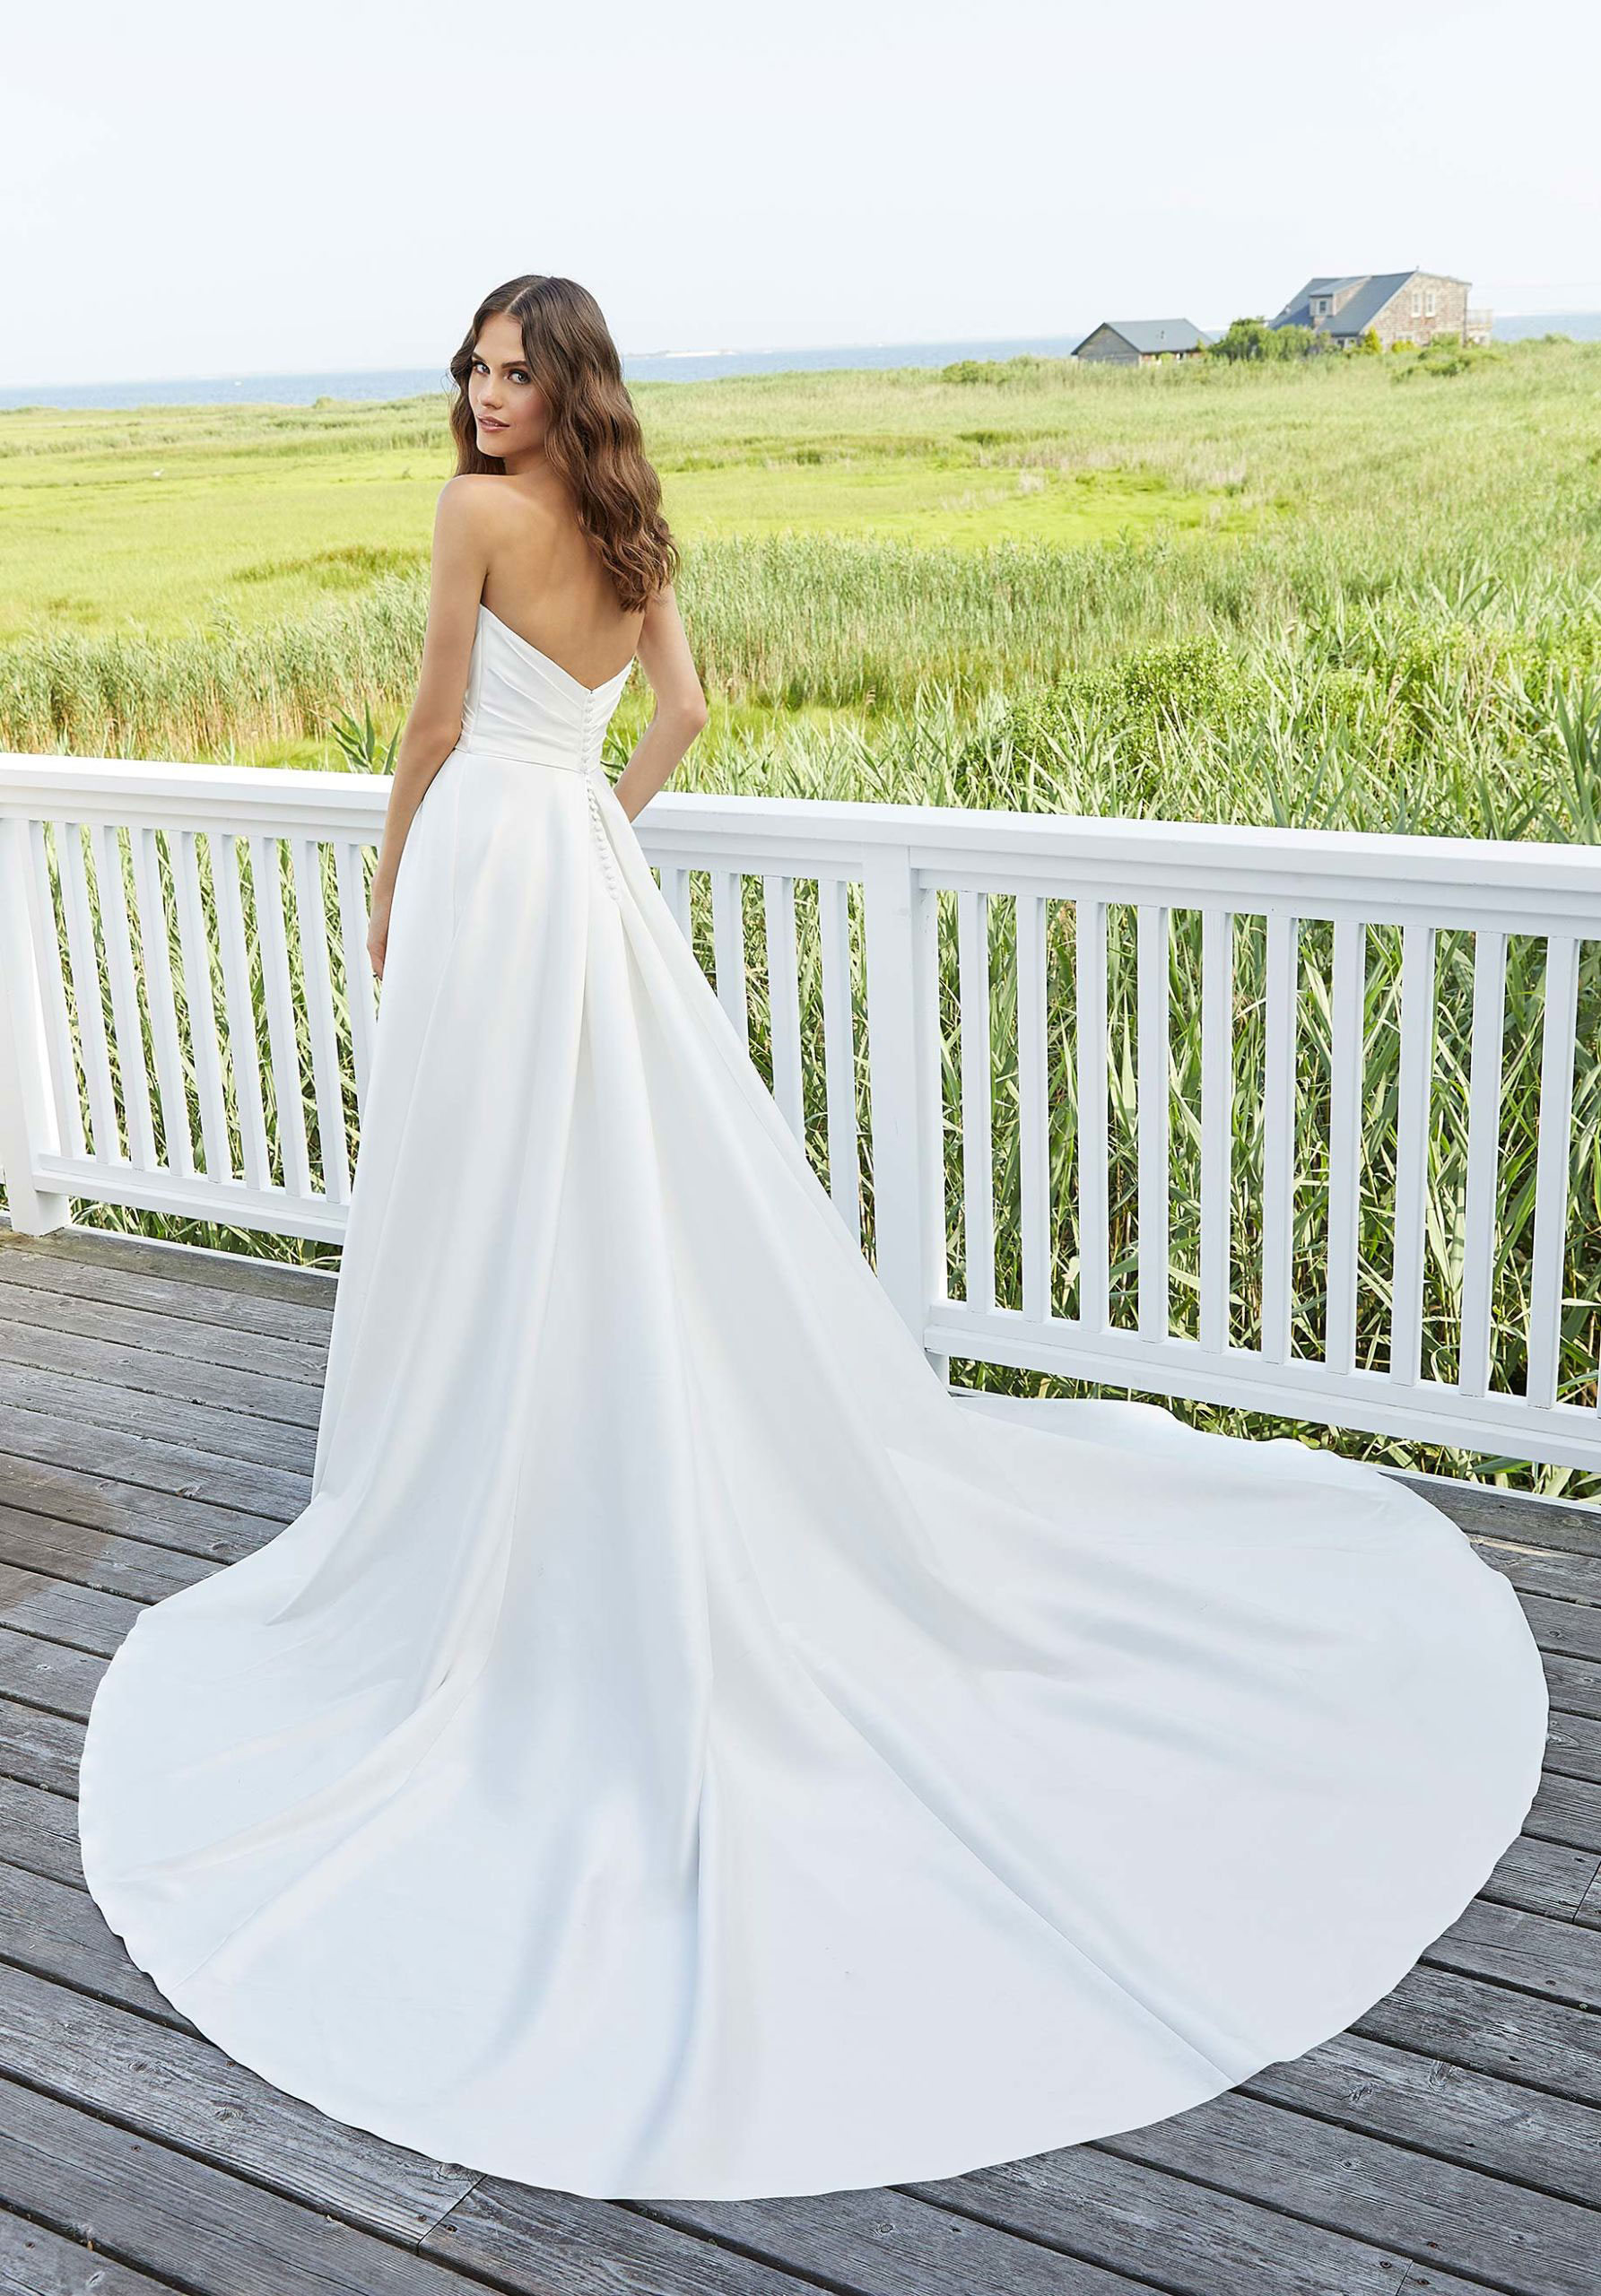 Erin wedding dress by Morilee